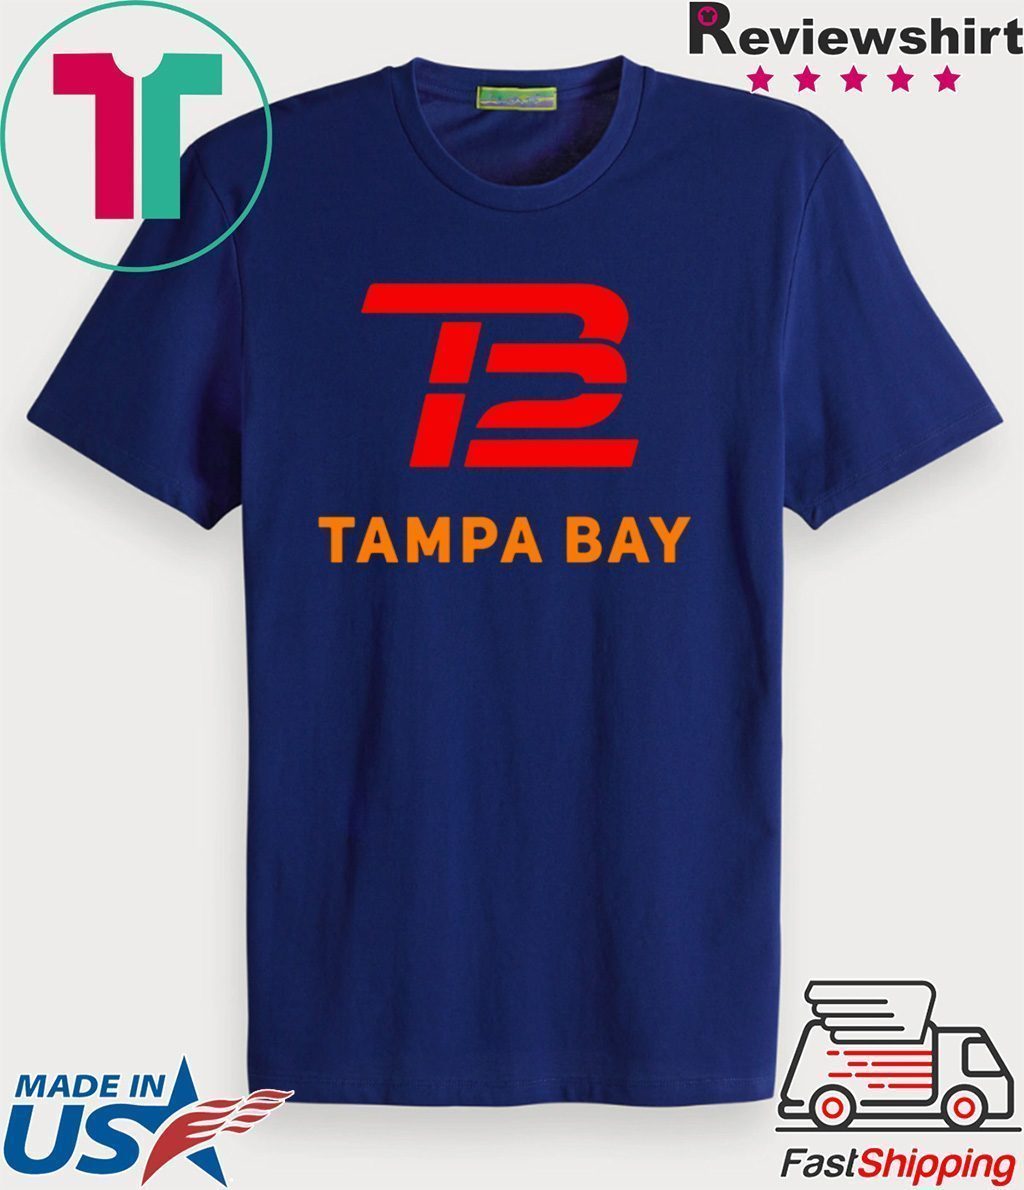 Tb12 Tampa Bay Tee Shirts - Teeducks